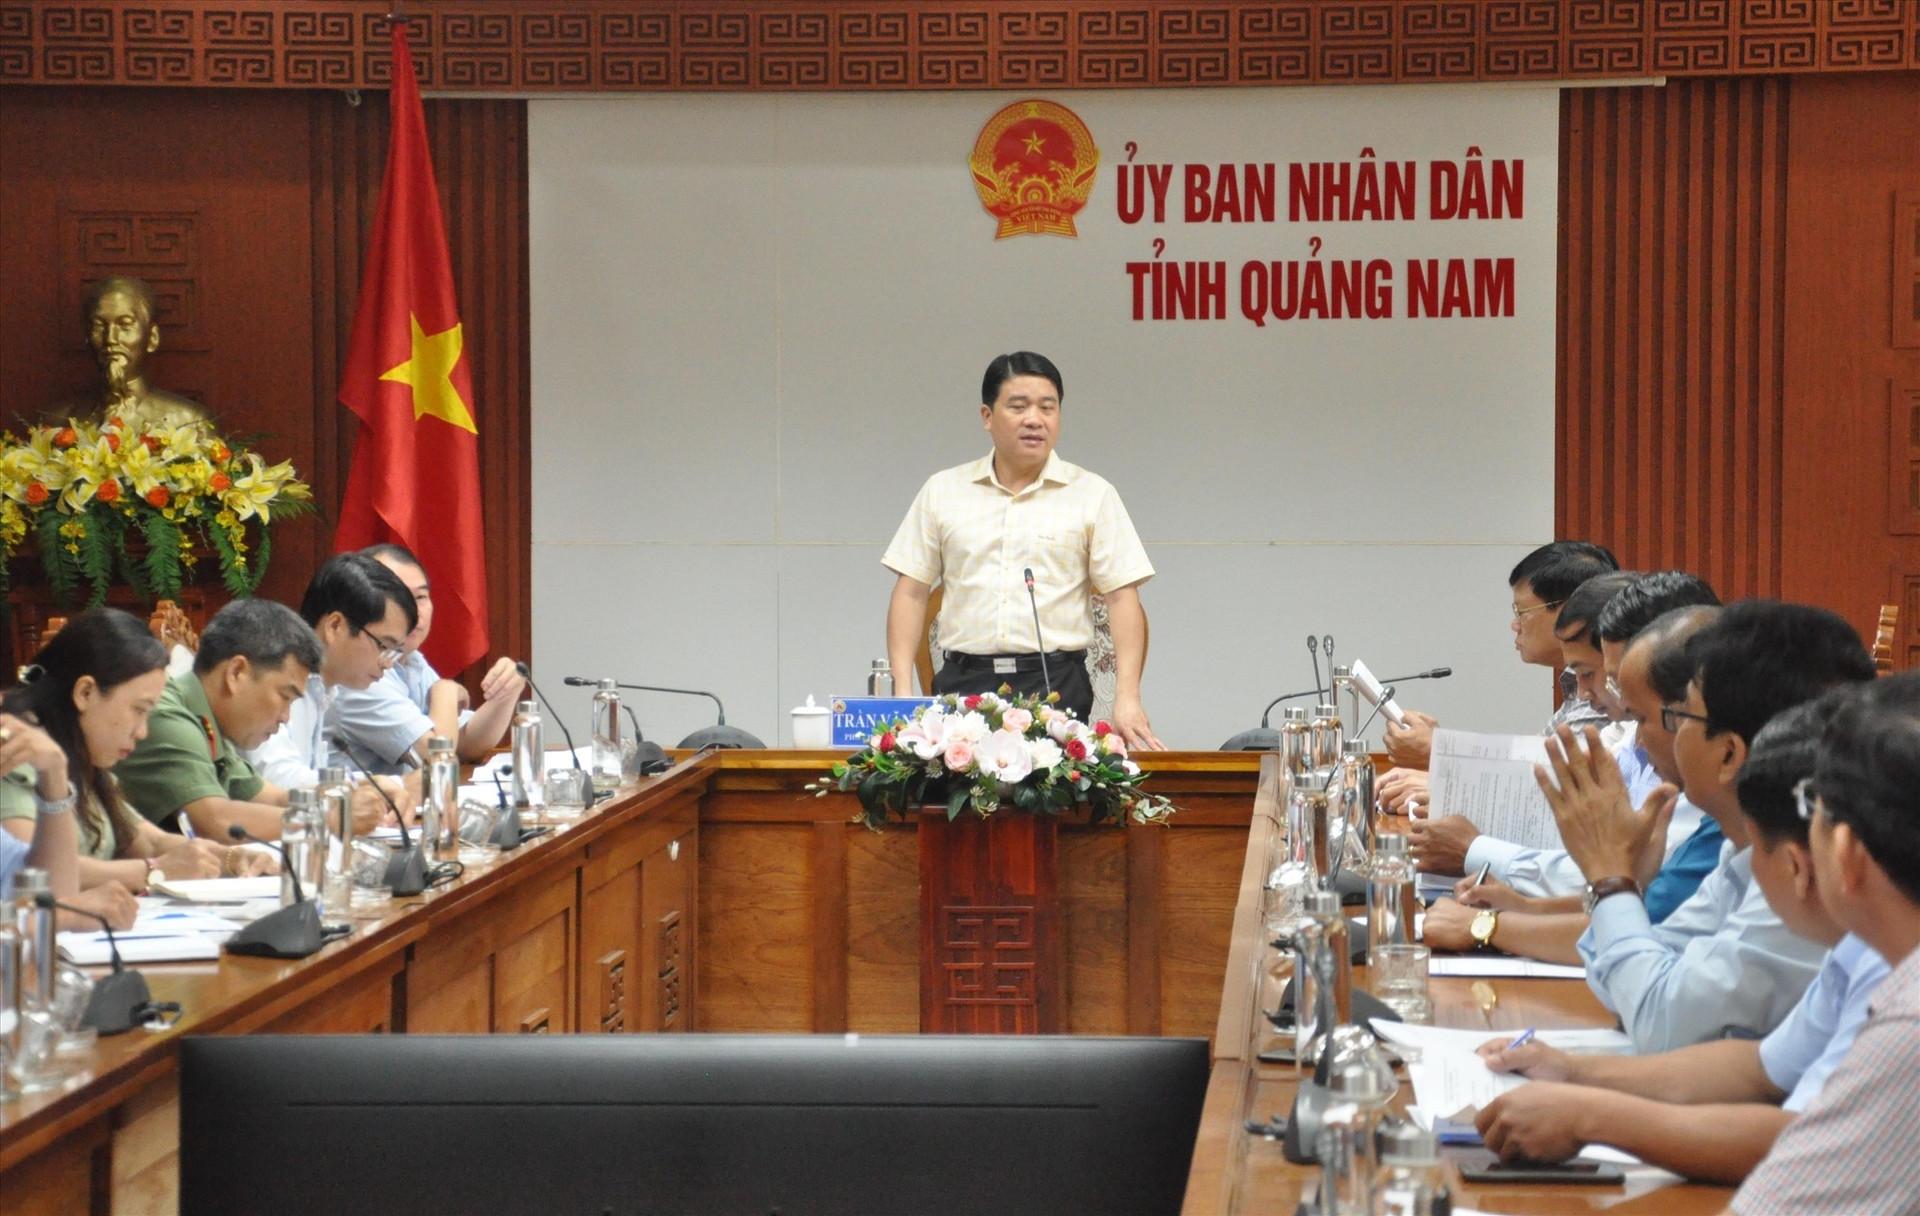 Phó Chủ tịch UBND tỉnh Trần Văn Tân nhấn mạnh nguyên tắc cứ thiếu giáo viên thì tổ chức thi tuyển. Ảnh: X.P